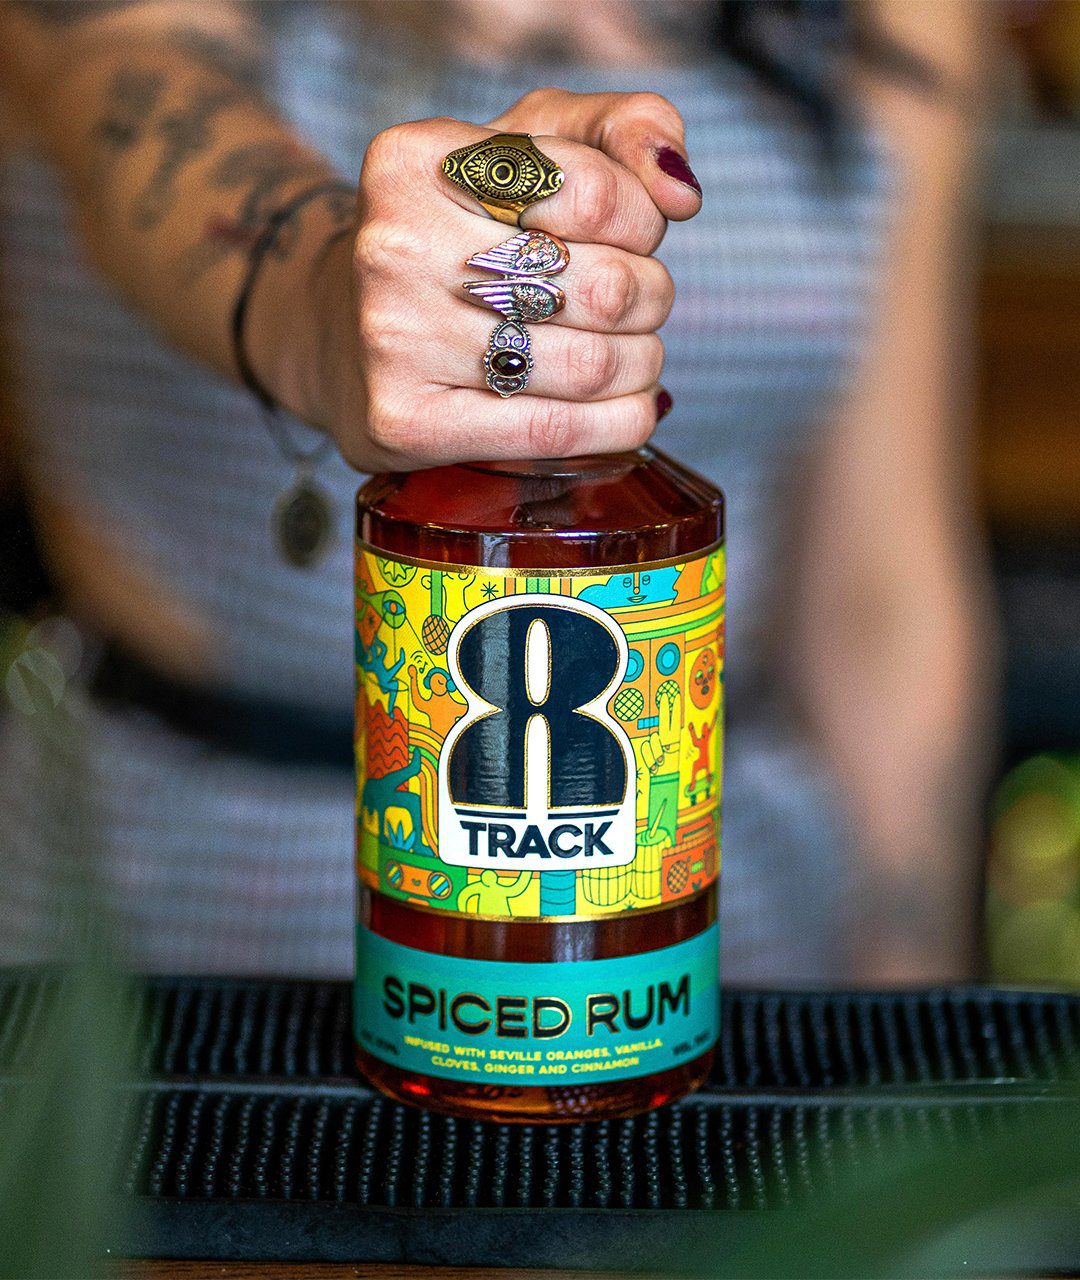 8Track rum branding label design